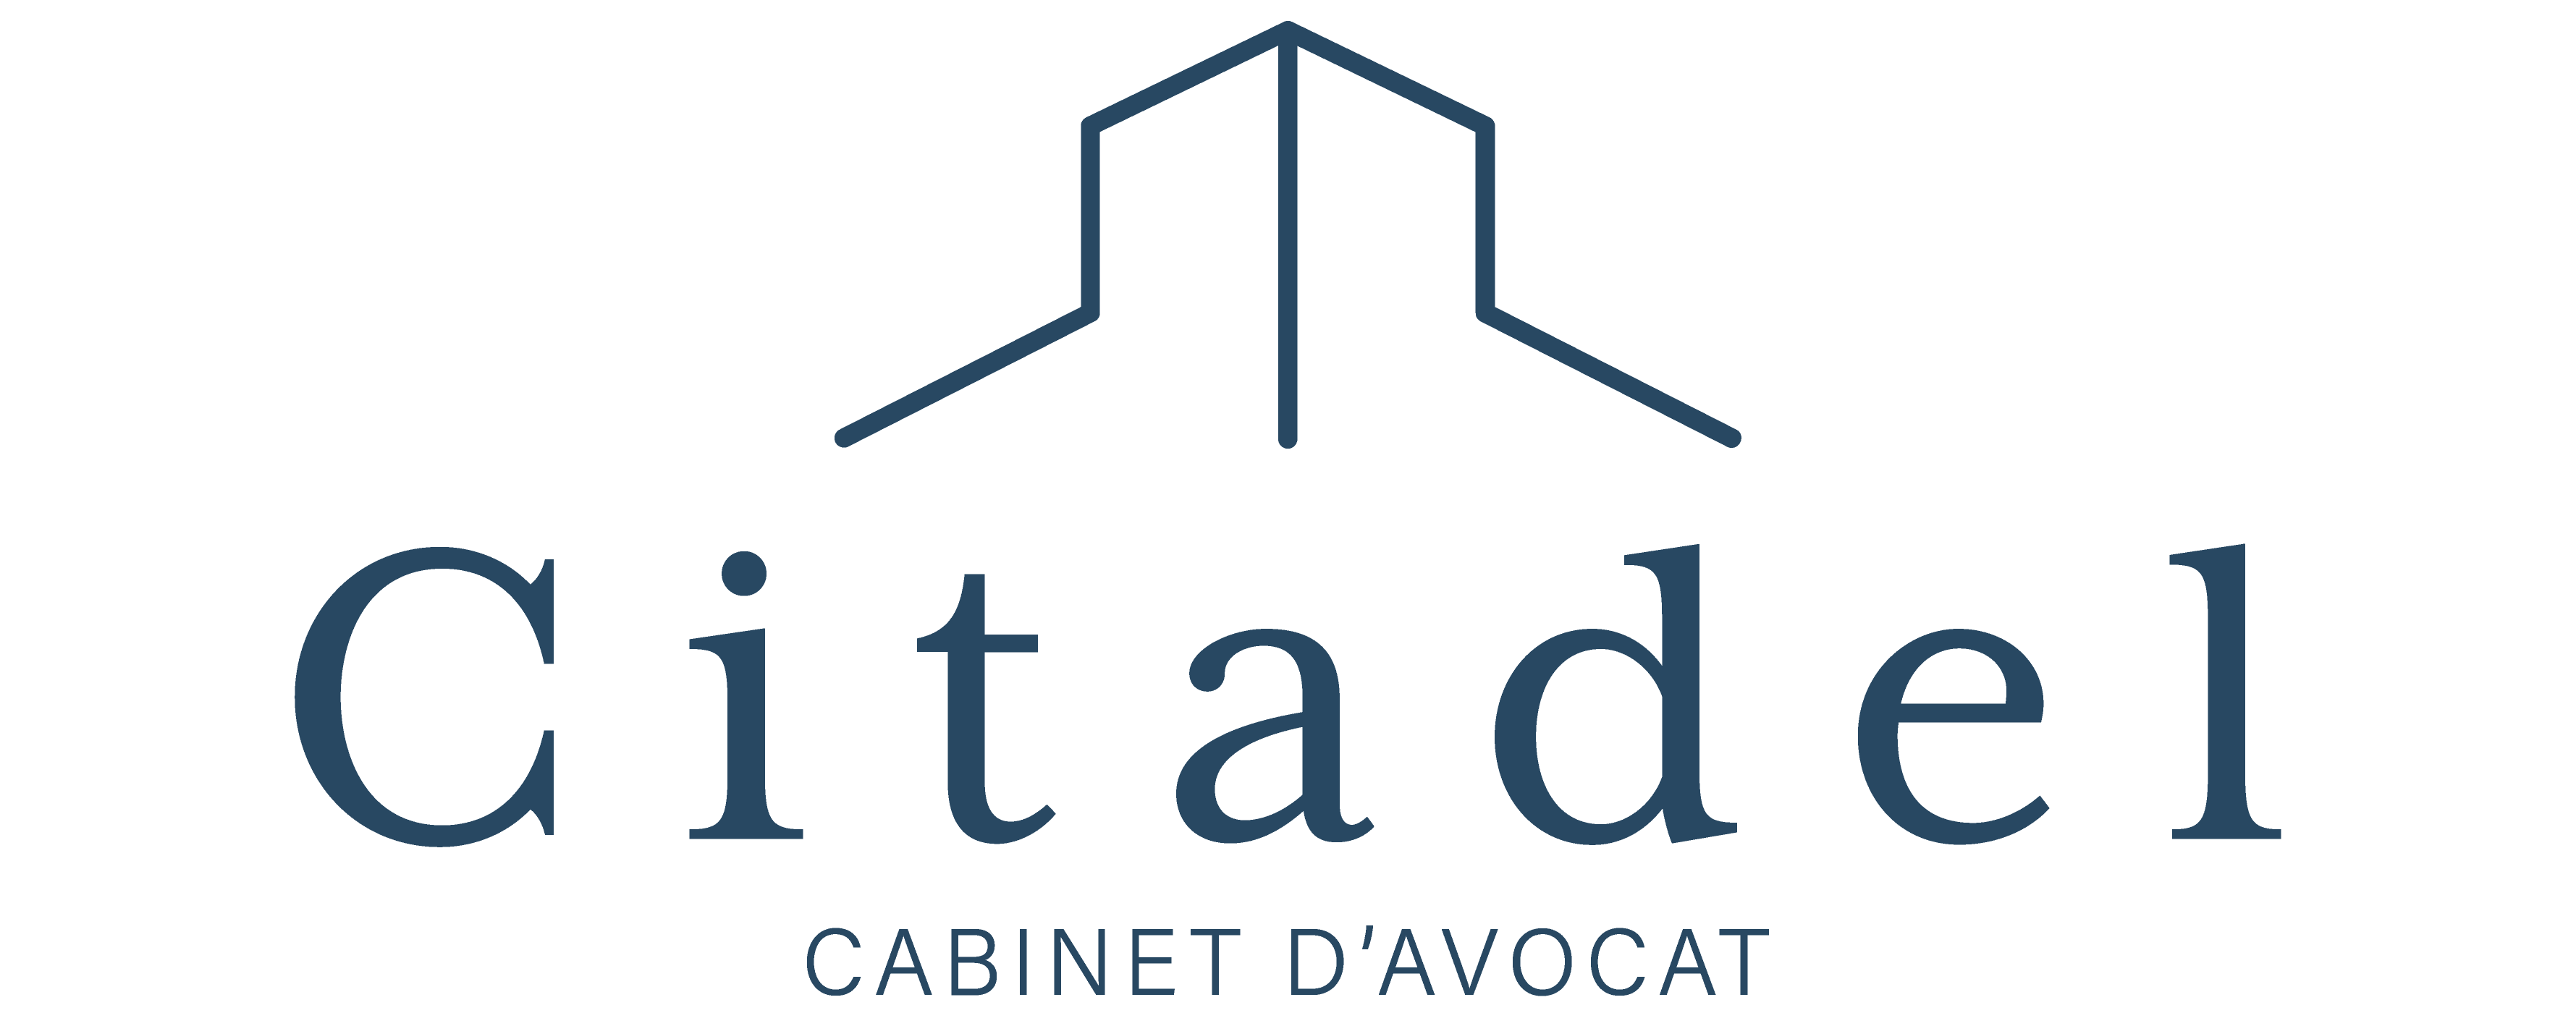 logo de citadel Cabinet d'avocat